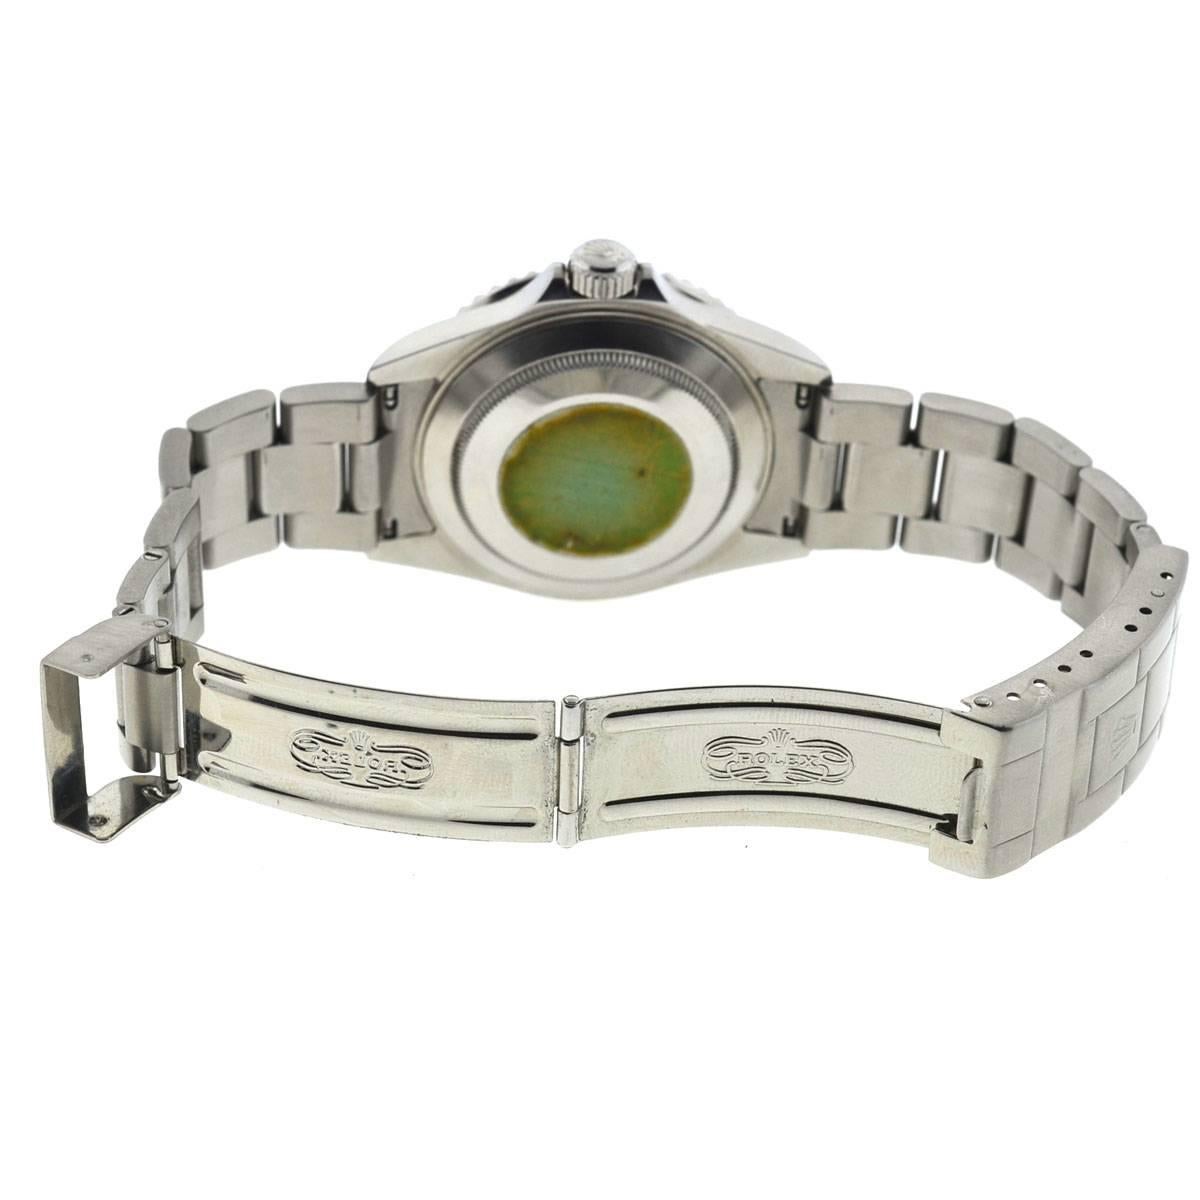 Rolex Stainless Steel Kermit Submariner Automatic Wristwatch Ref 16610LV 1